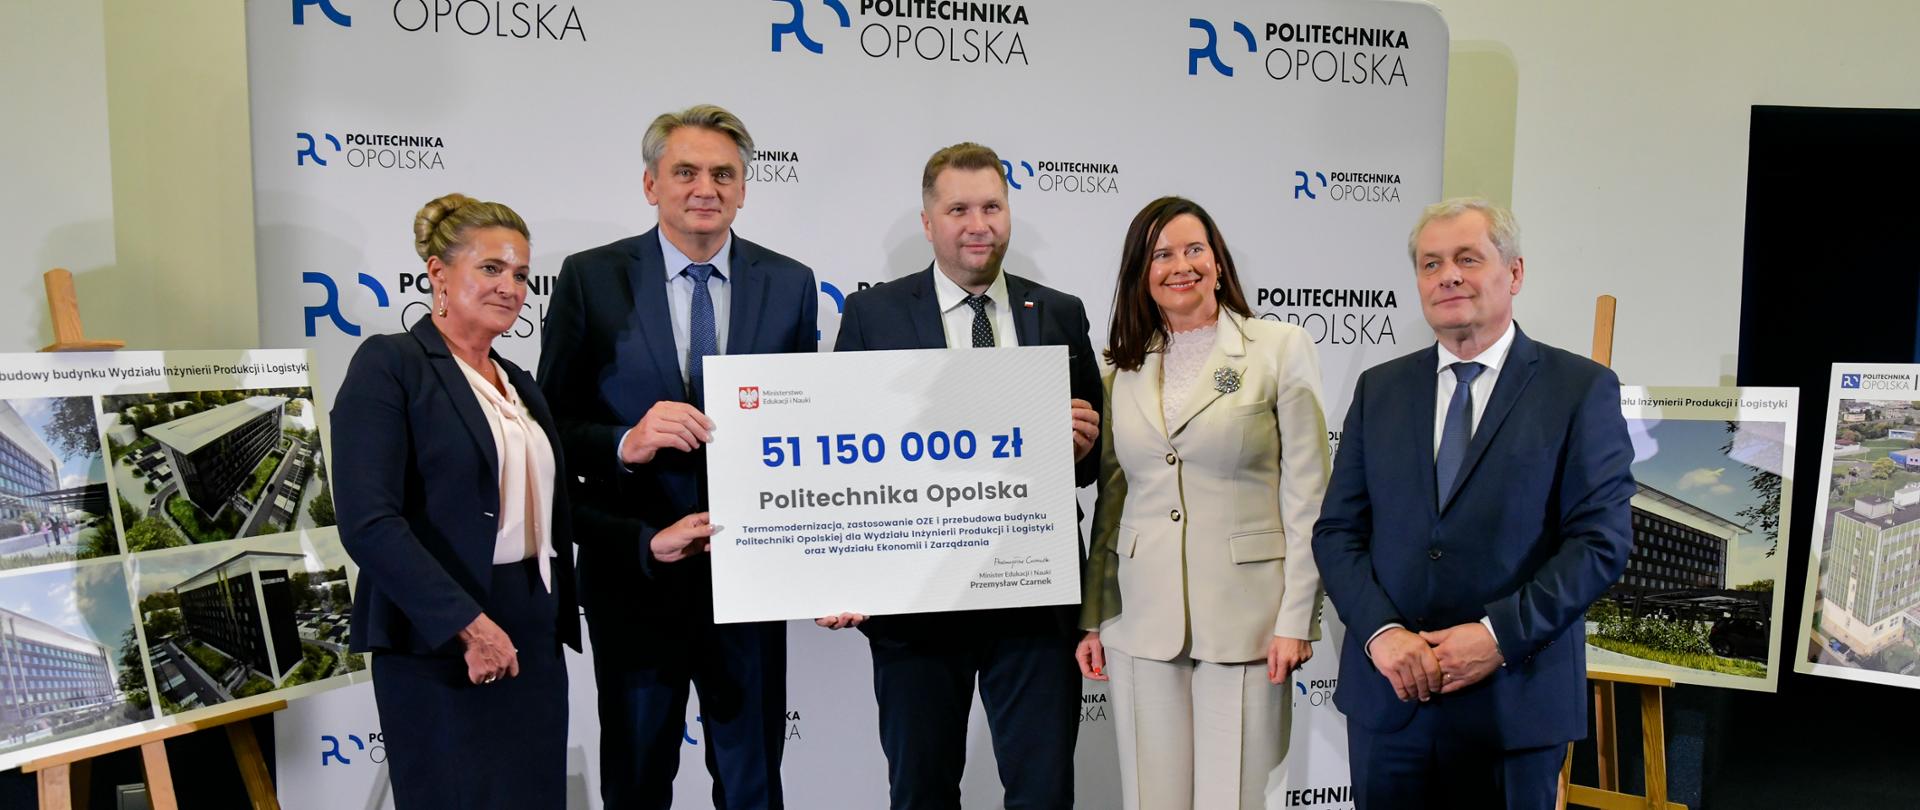 Minister Czarnek w otoczeniu czterech osób stoi na tle ściany z napisem Politechnika Opolska, trzyma duży symboliczny czek z napisem 51 150 000 zł.